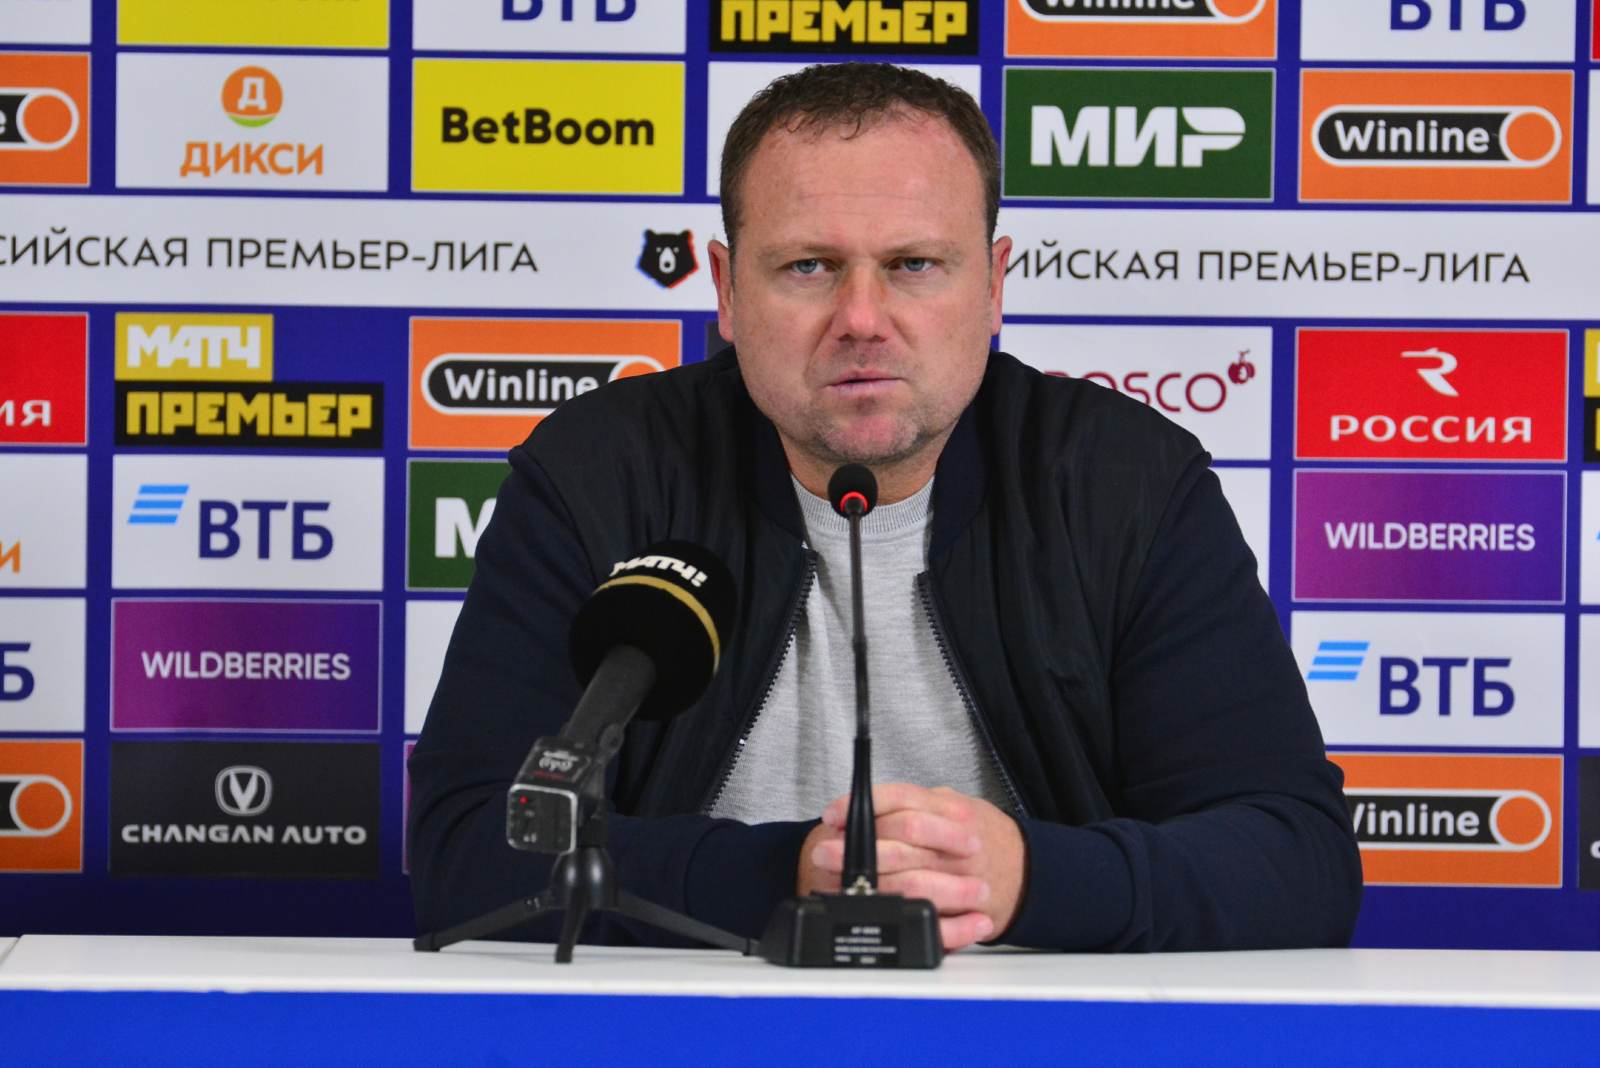 Тренер «Динамо» Личка рассказал о разговоре с Абаскалем перед матчем со «Спартаком»